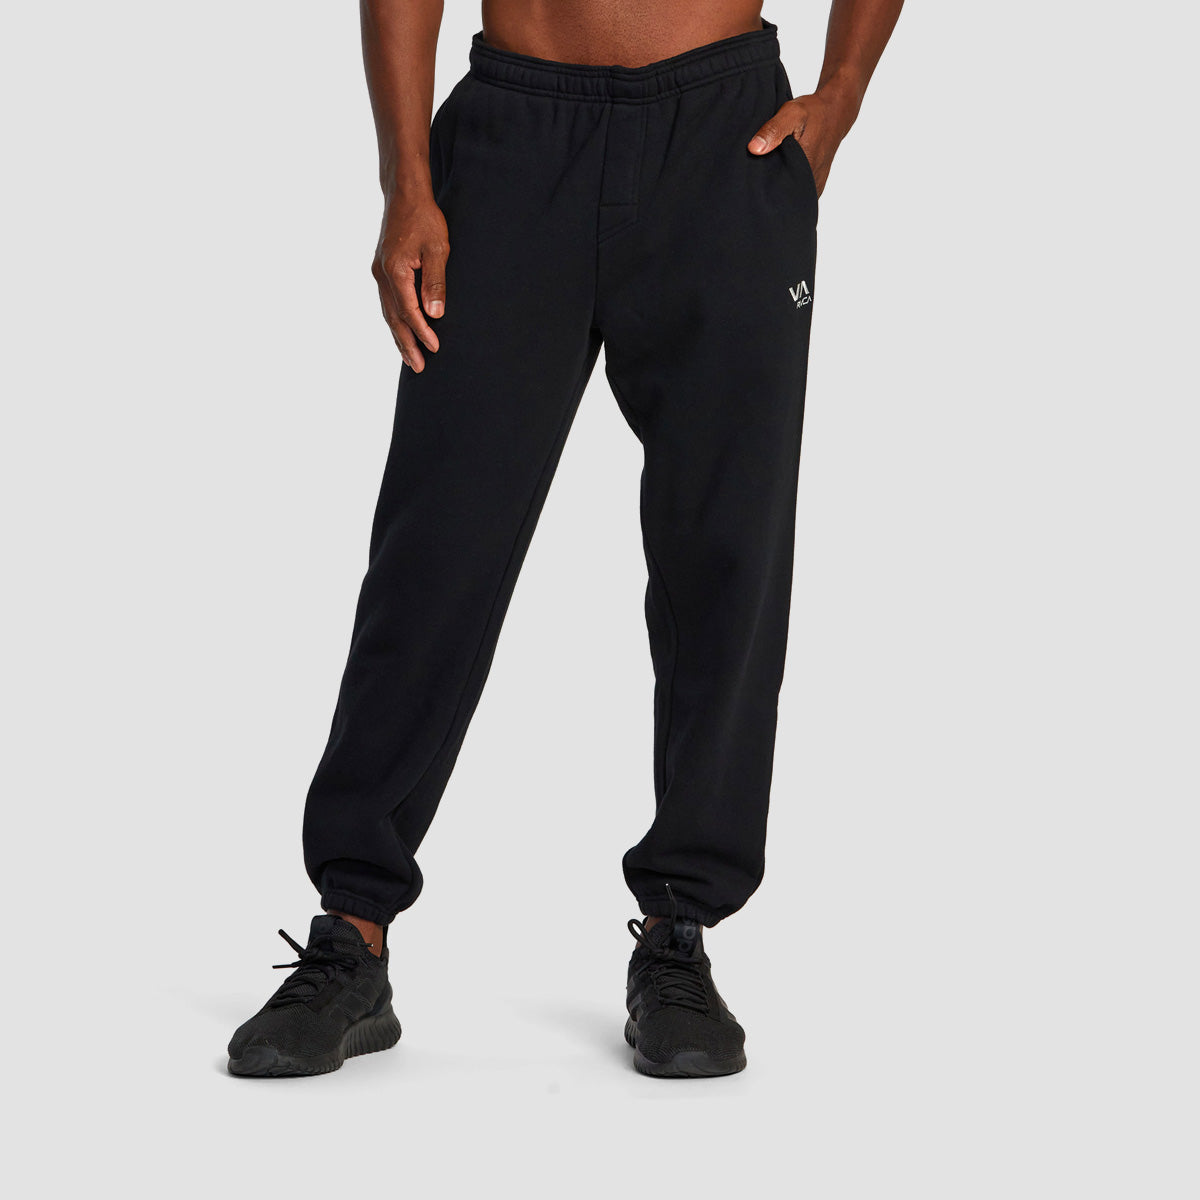 RVCA VA Essential Sweatpants Black